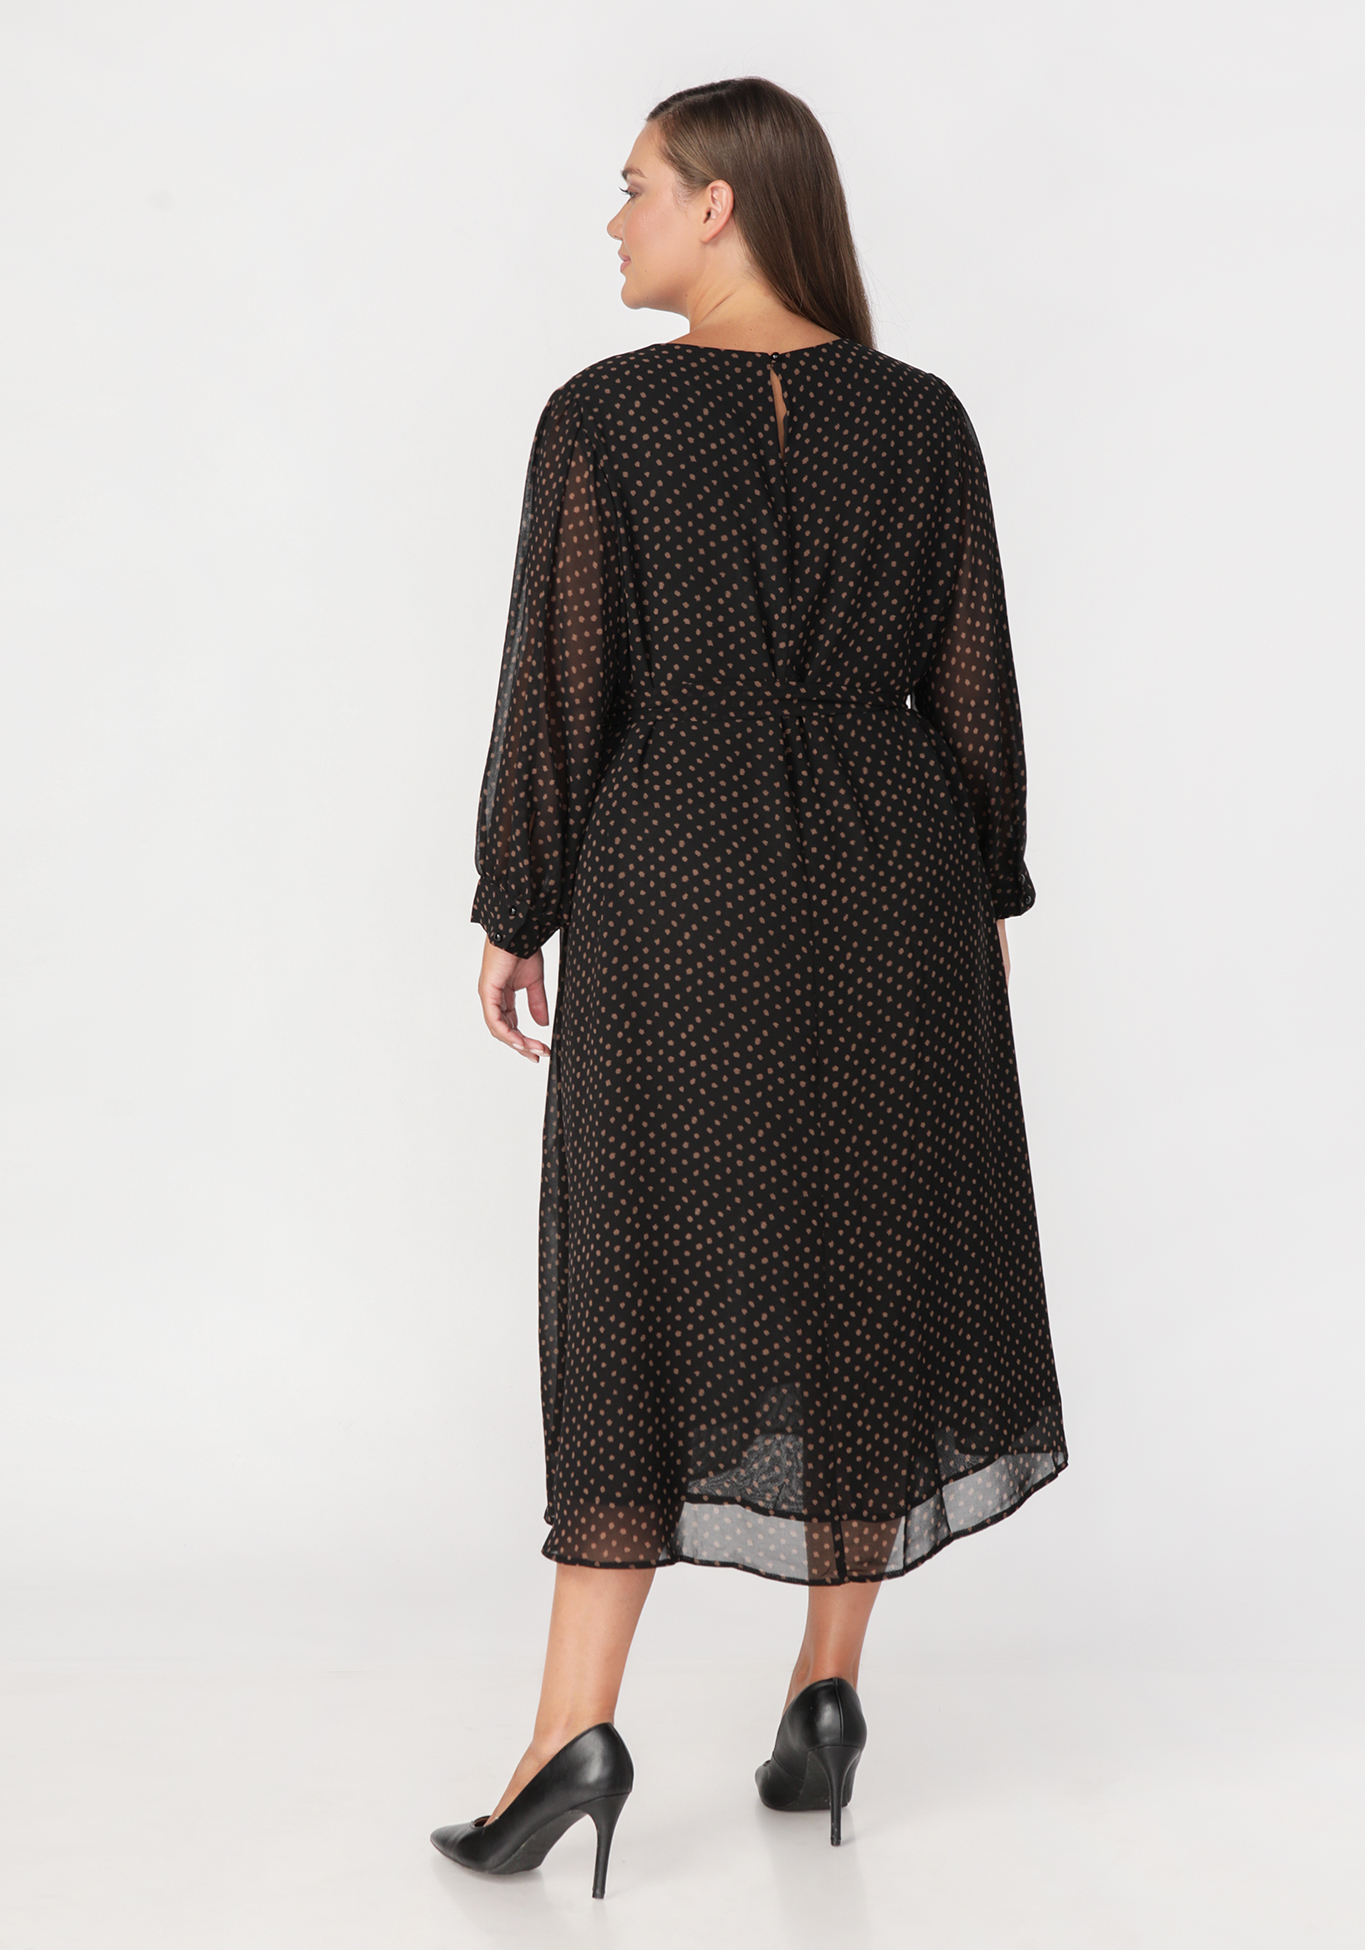 Платье «Флоретто» Intikoma, размер 50, цвет черный - фото 2